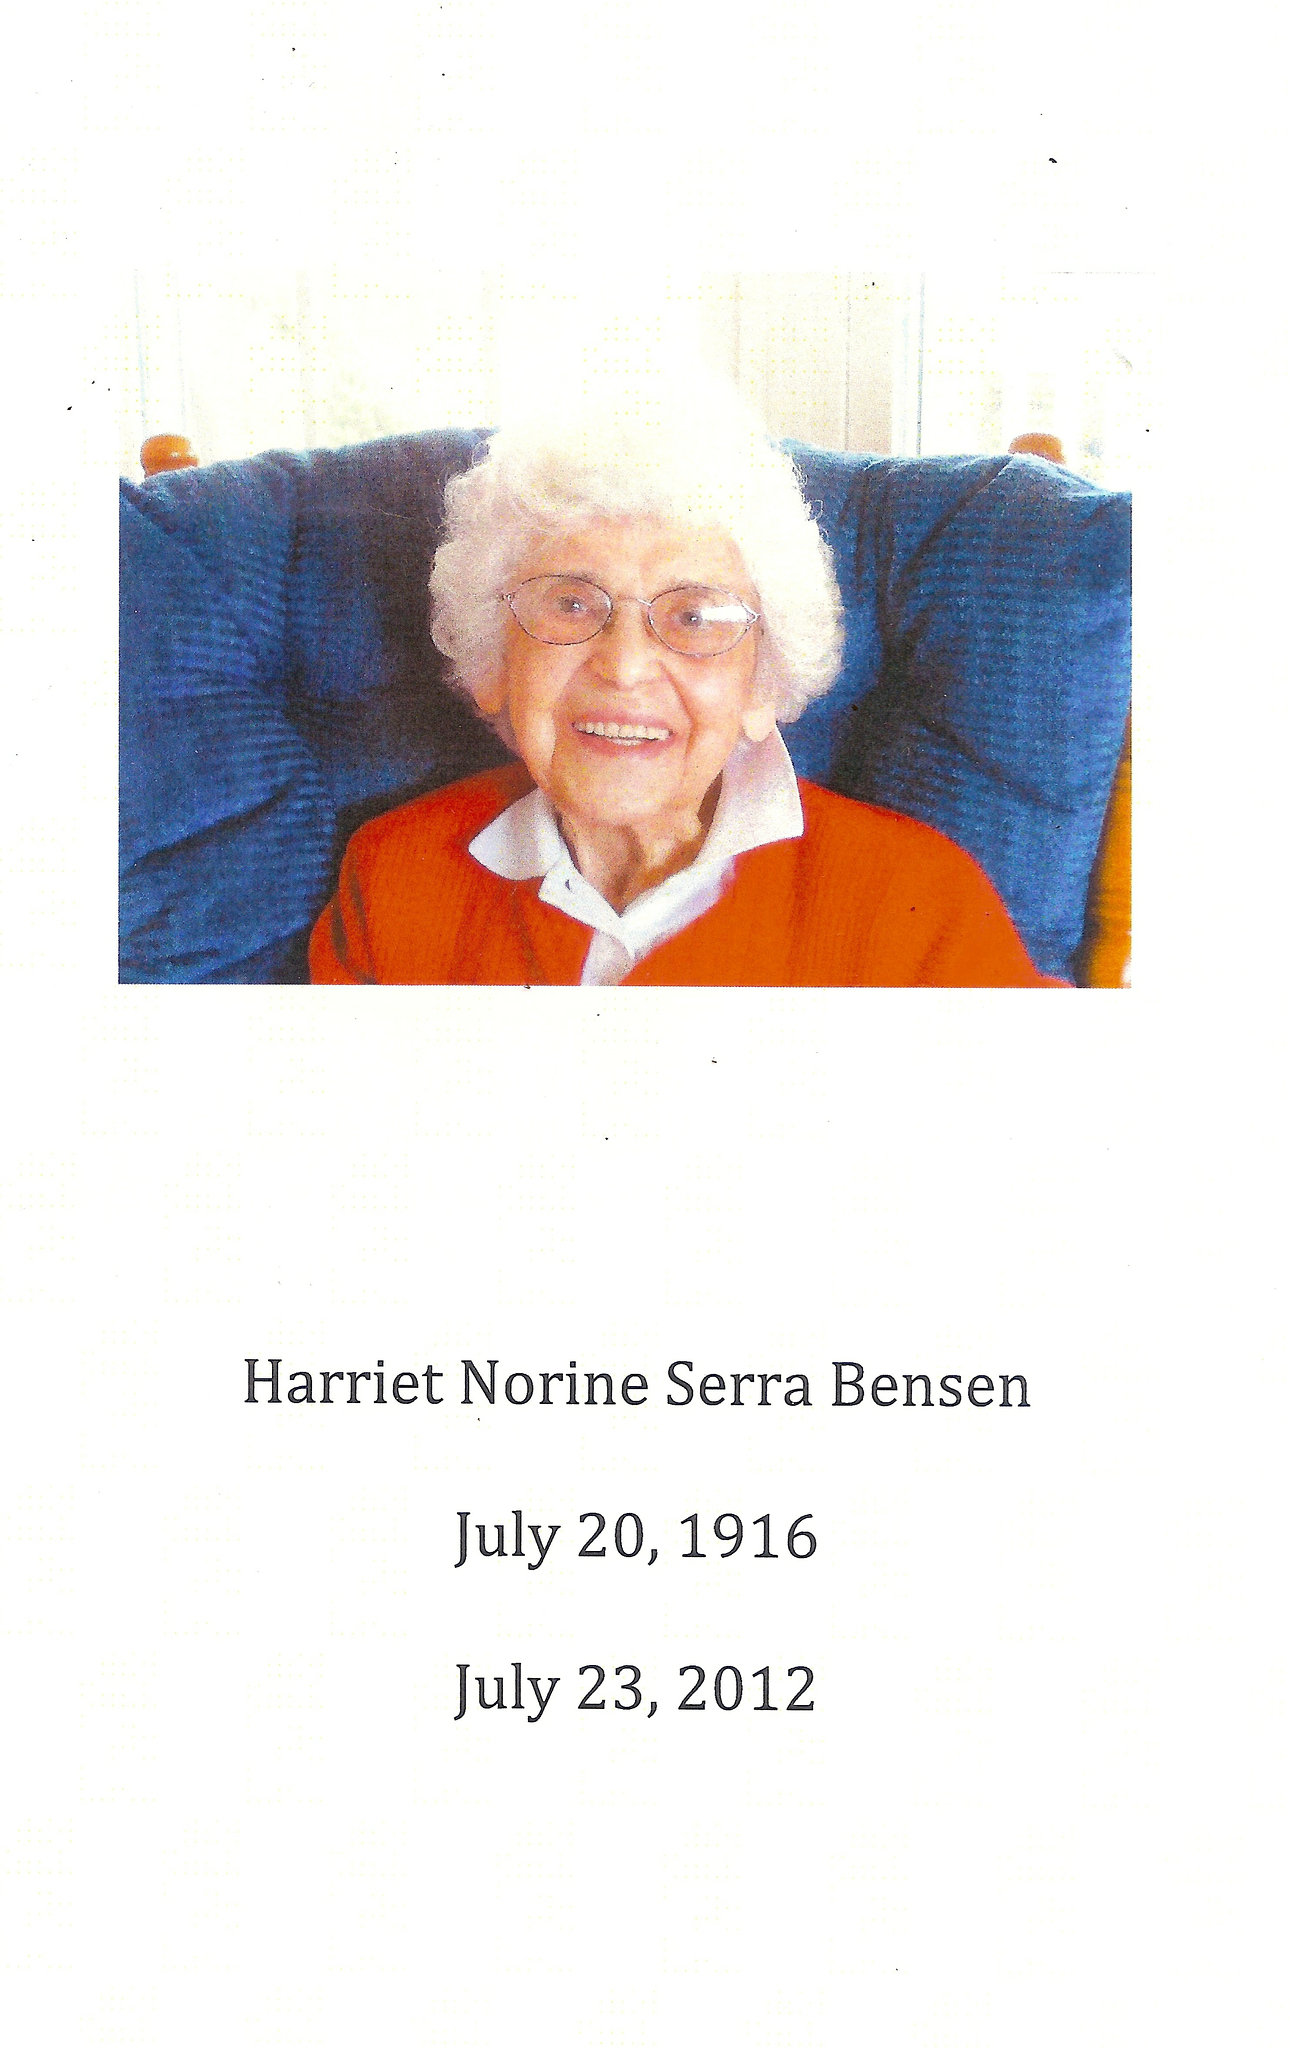 Harriet, 1916 - 2012